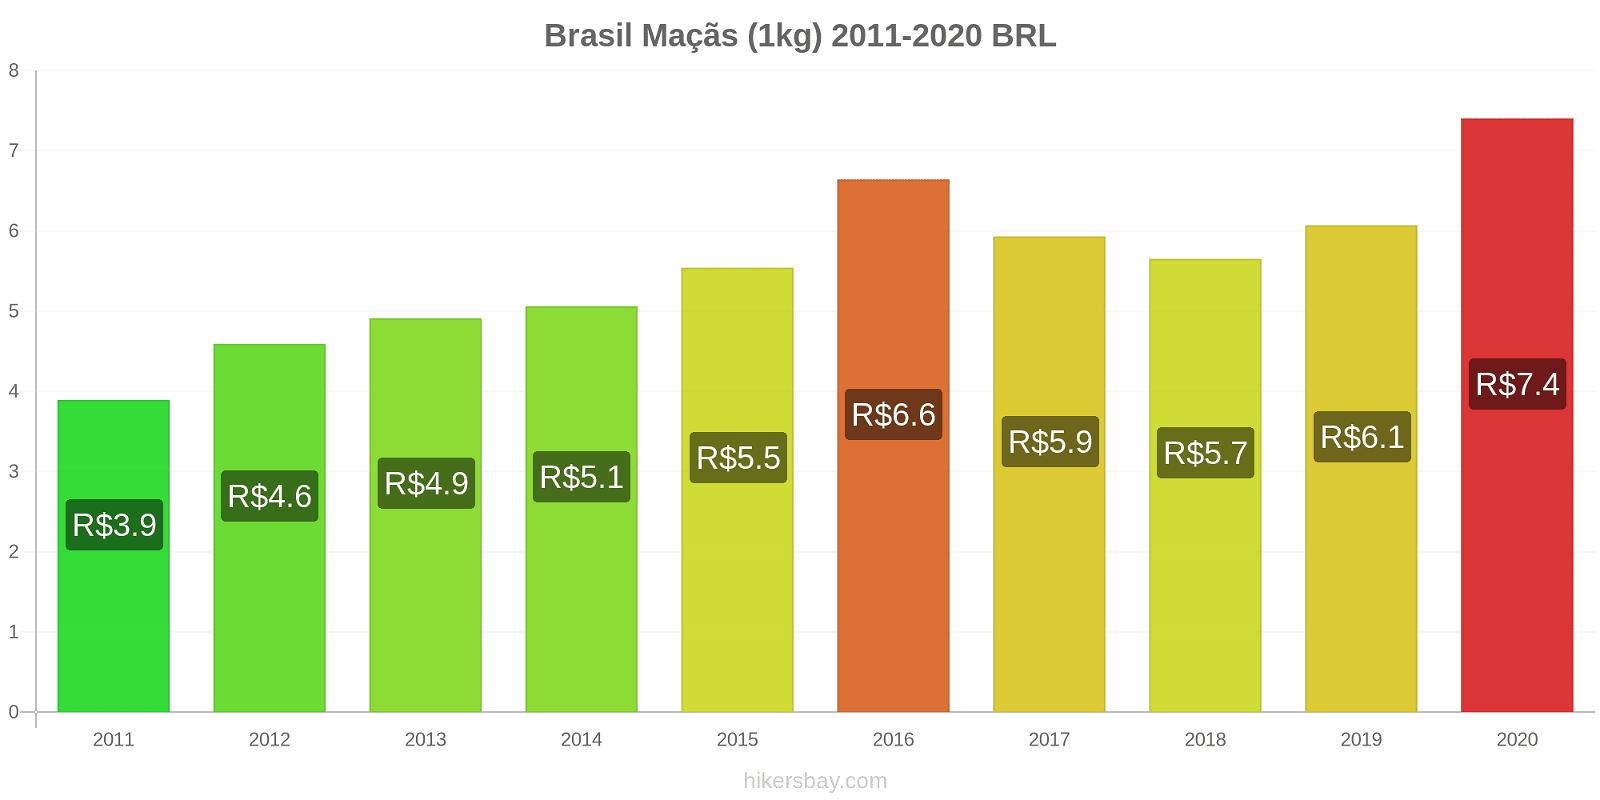 Brasil variação de preço Maçãs (1kg) hikersbay.com